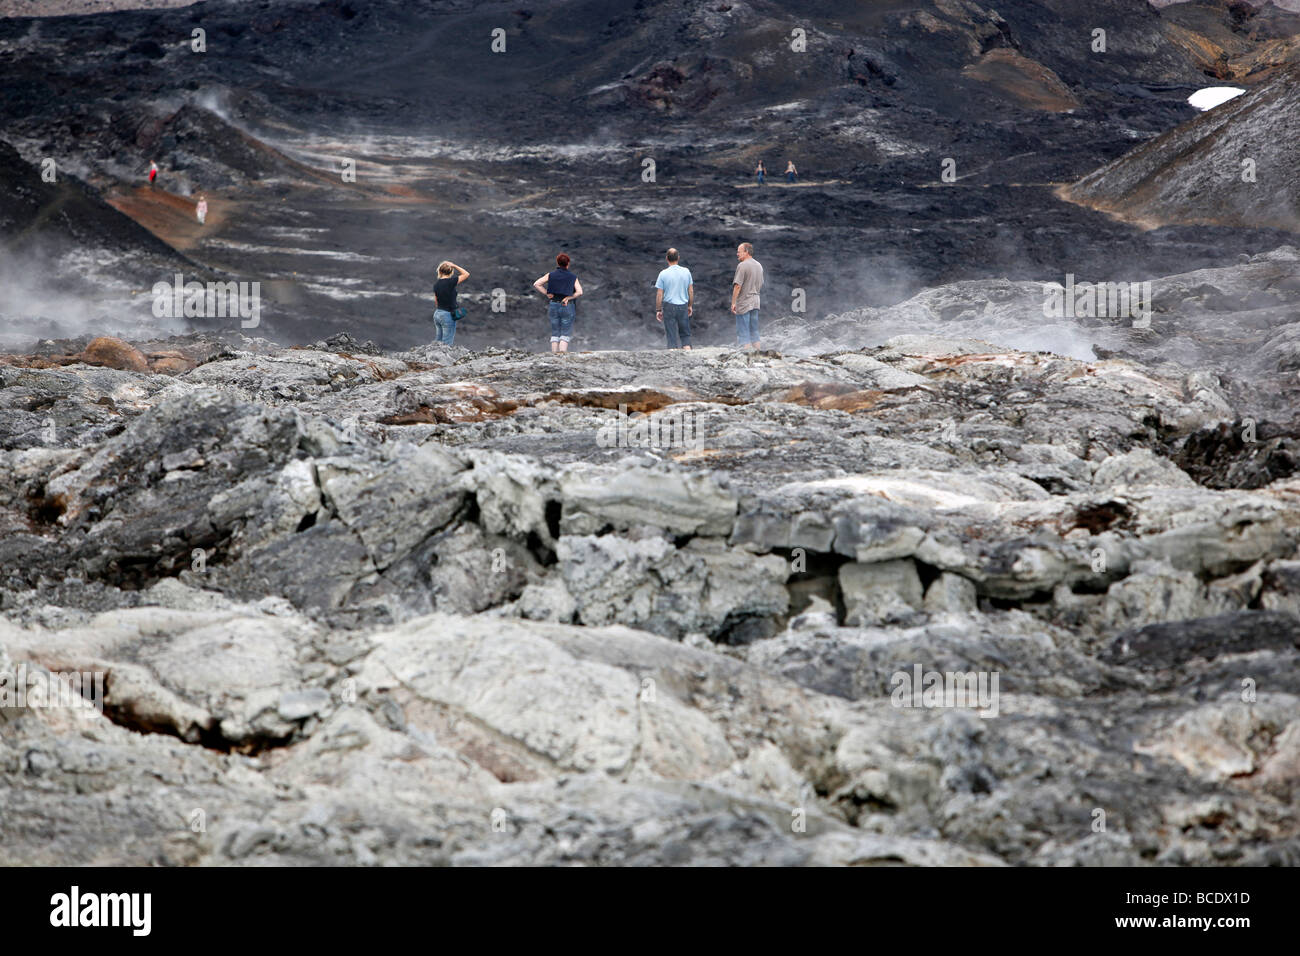 Quatre personnes regarder par dessus un champ de lave, Krafla, Islande Banque D'Images